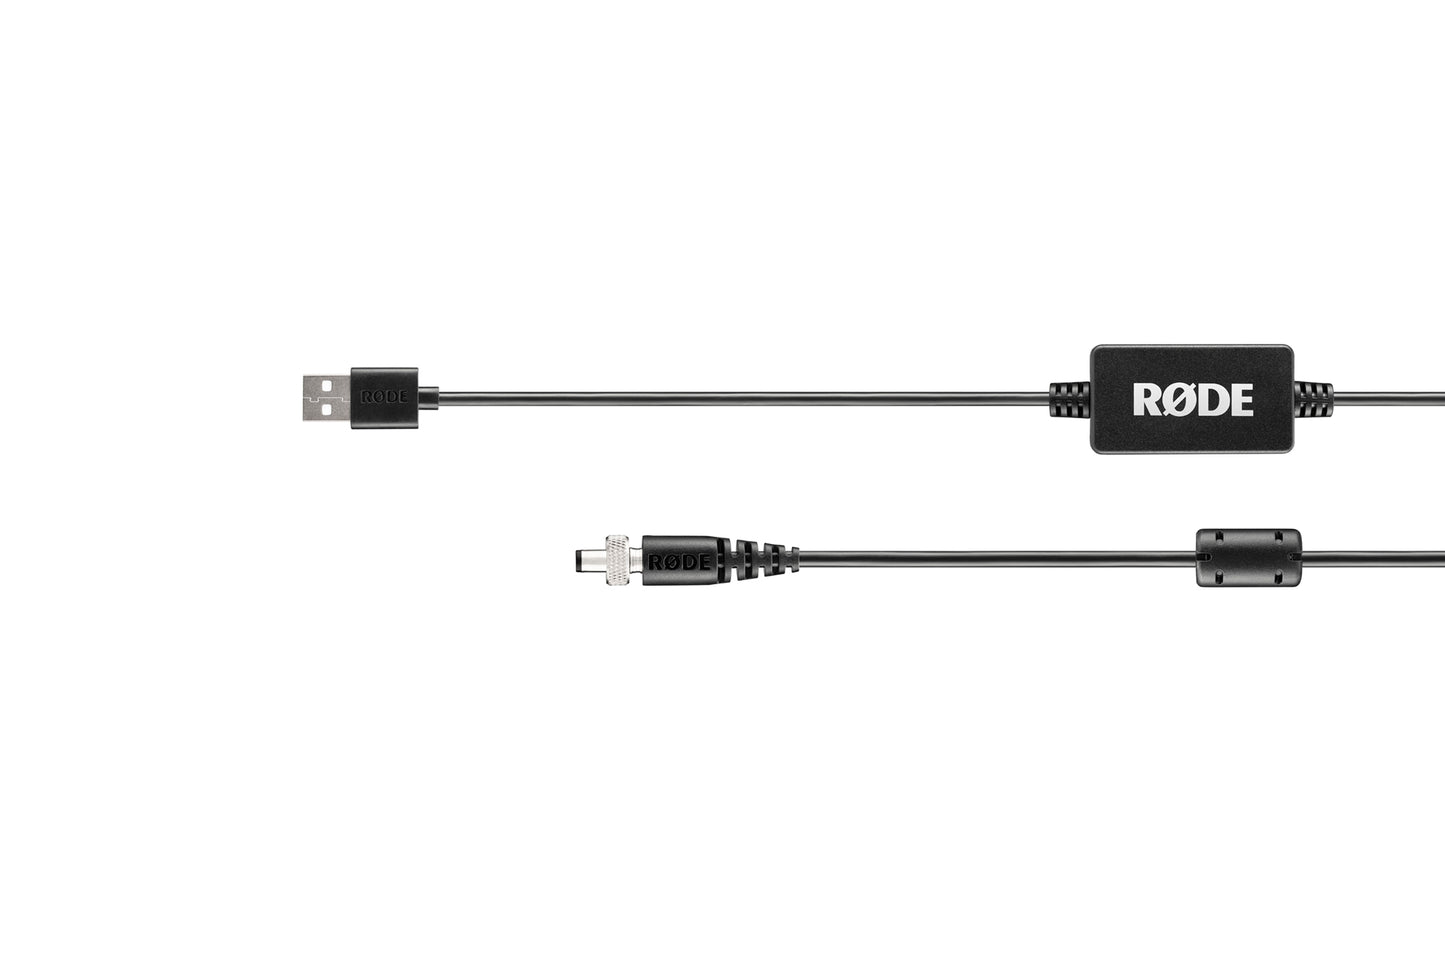 Cable de energía RODE DC-USB1